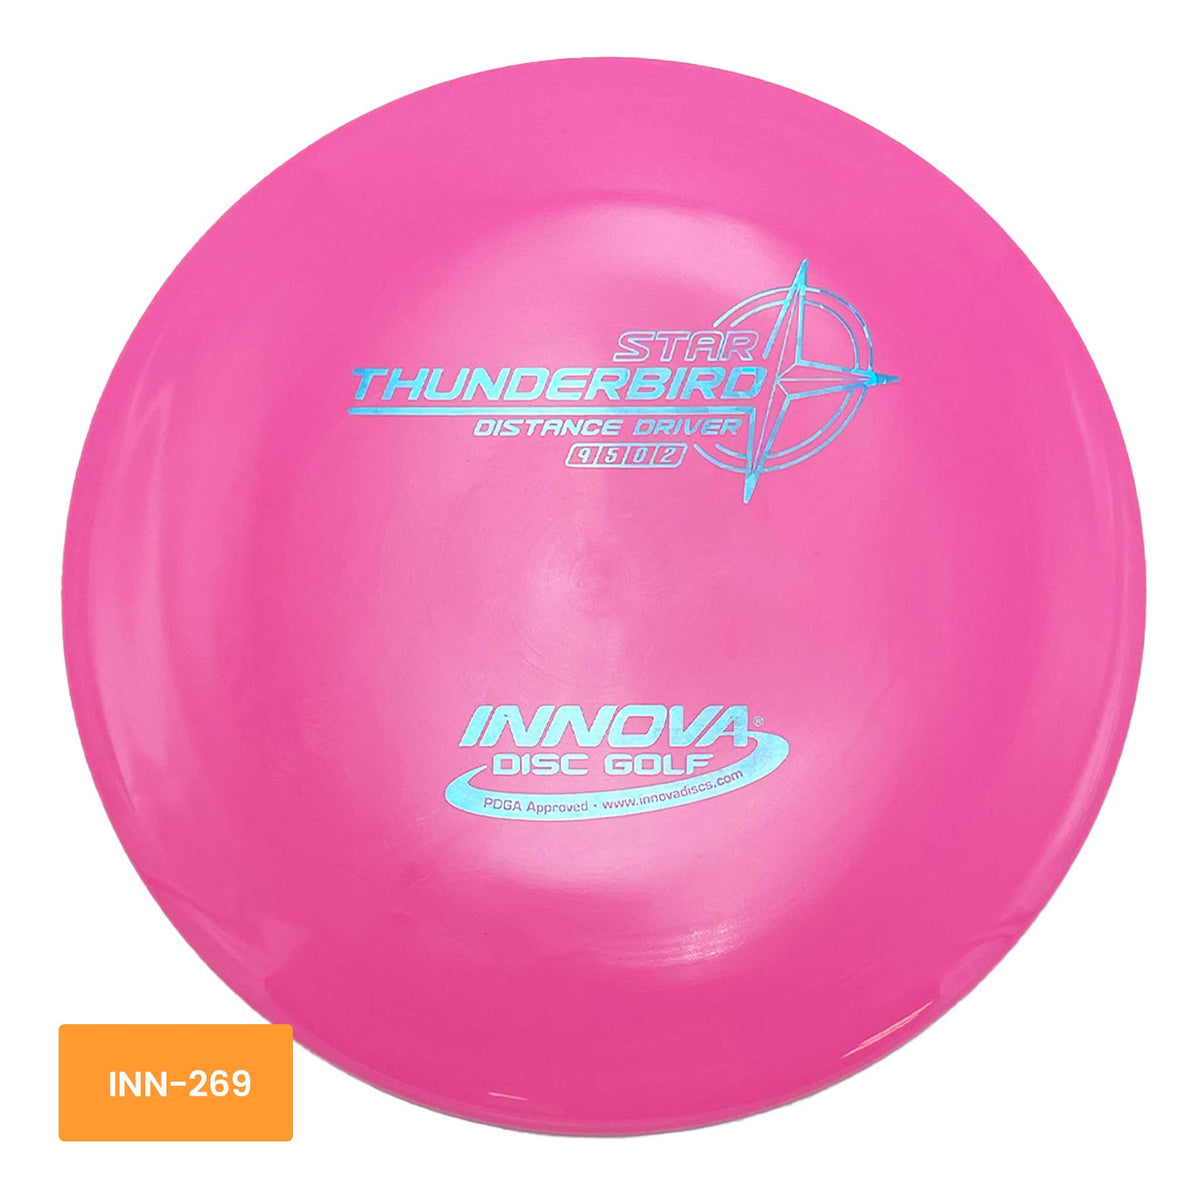 Innova Disc Golf Star Thunderbird distance driver - Pink / Blue